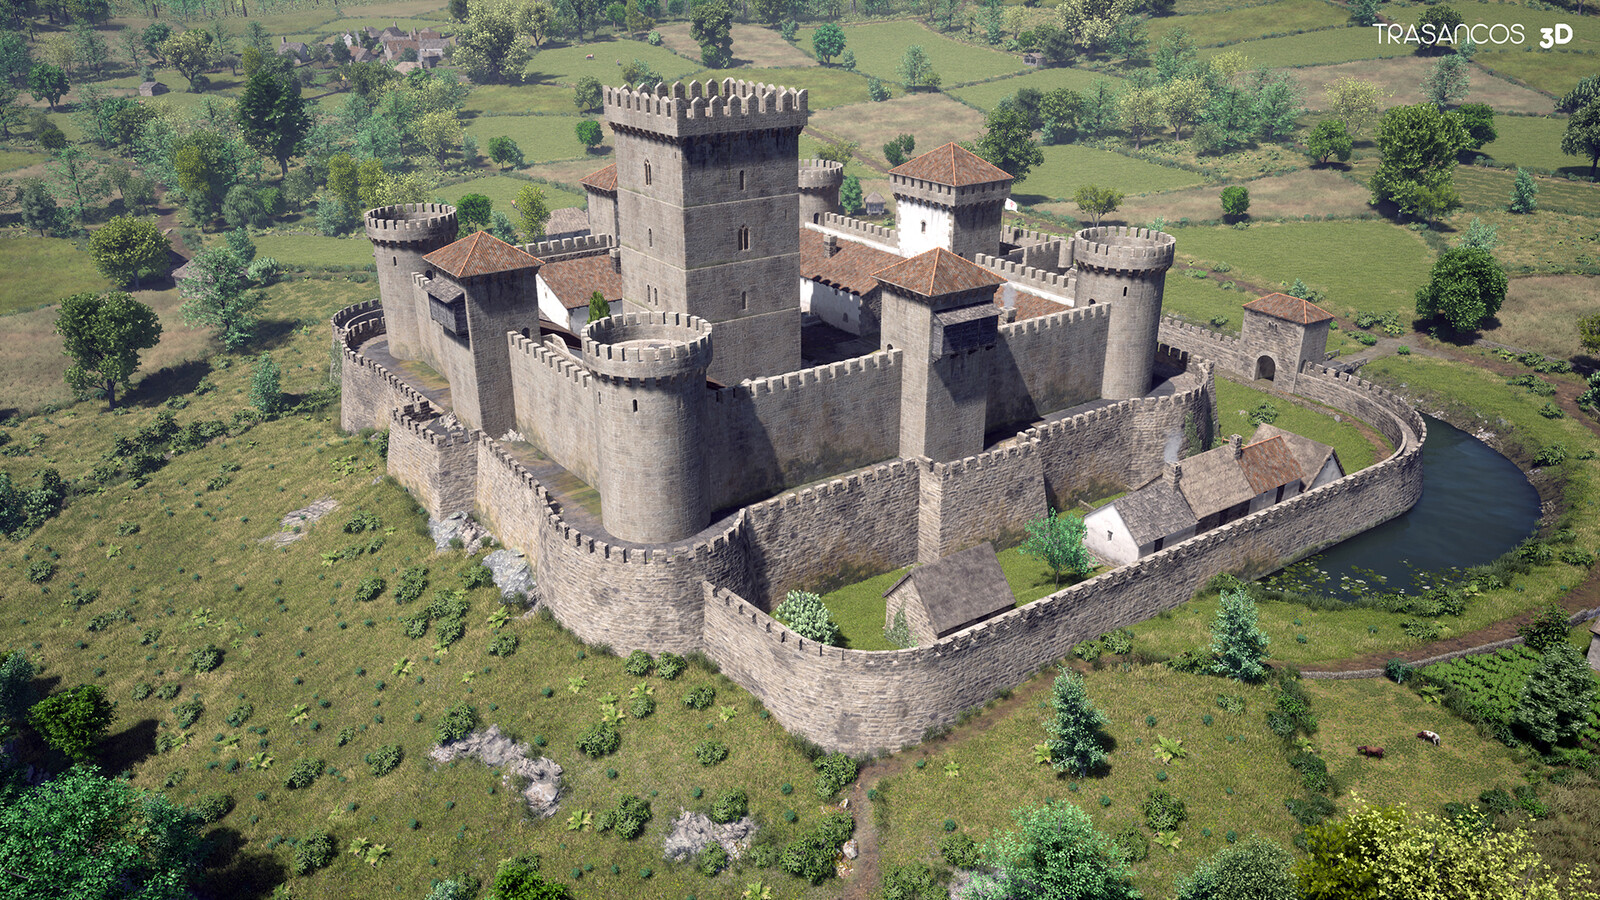 Rocha Forte castle. Final rendering view looking West.